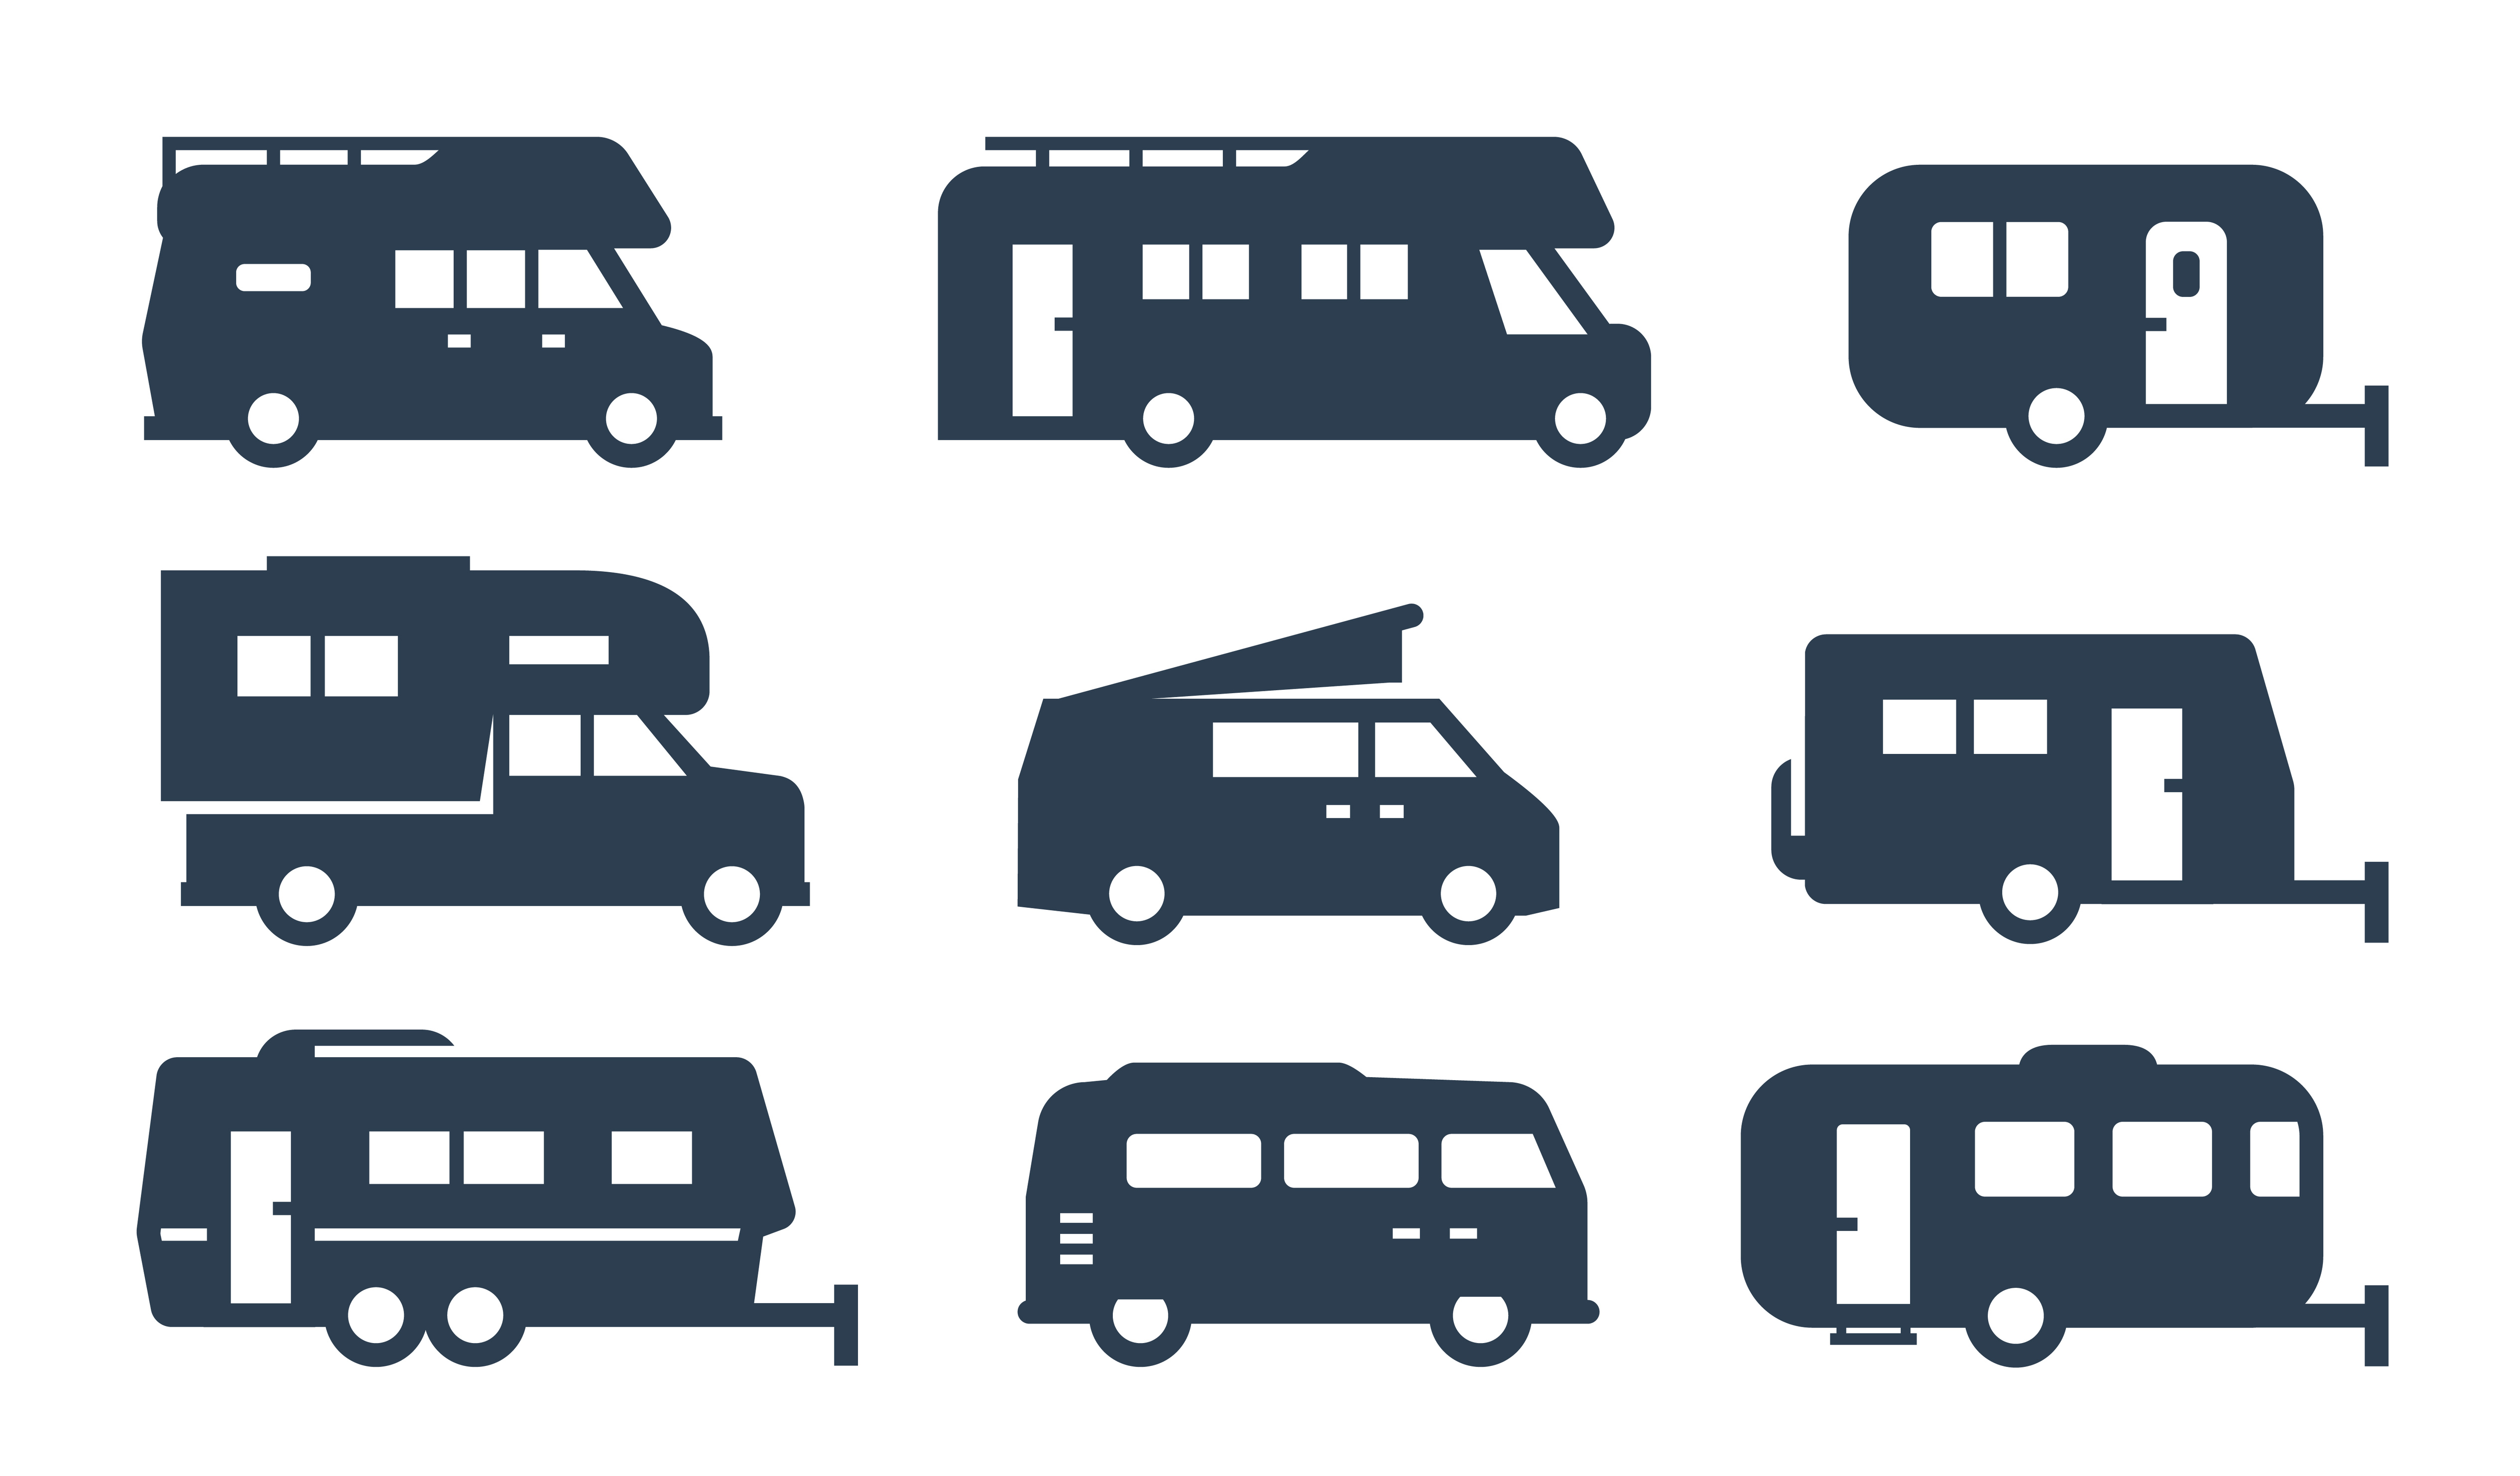 Characteristics of the BSM Bus Garcia Fària car park